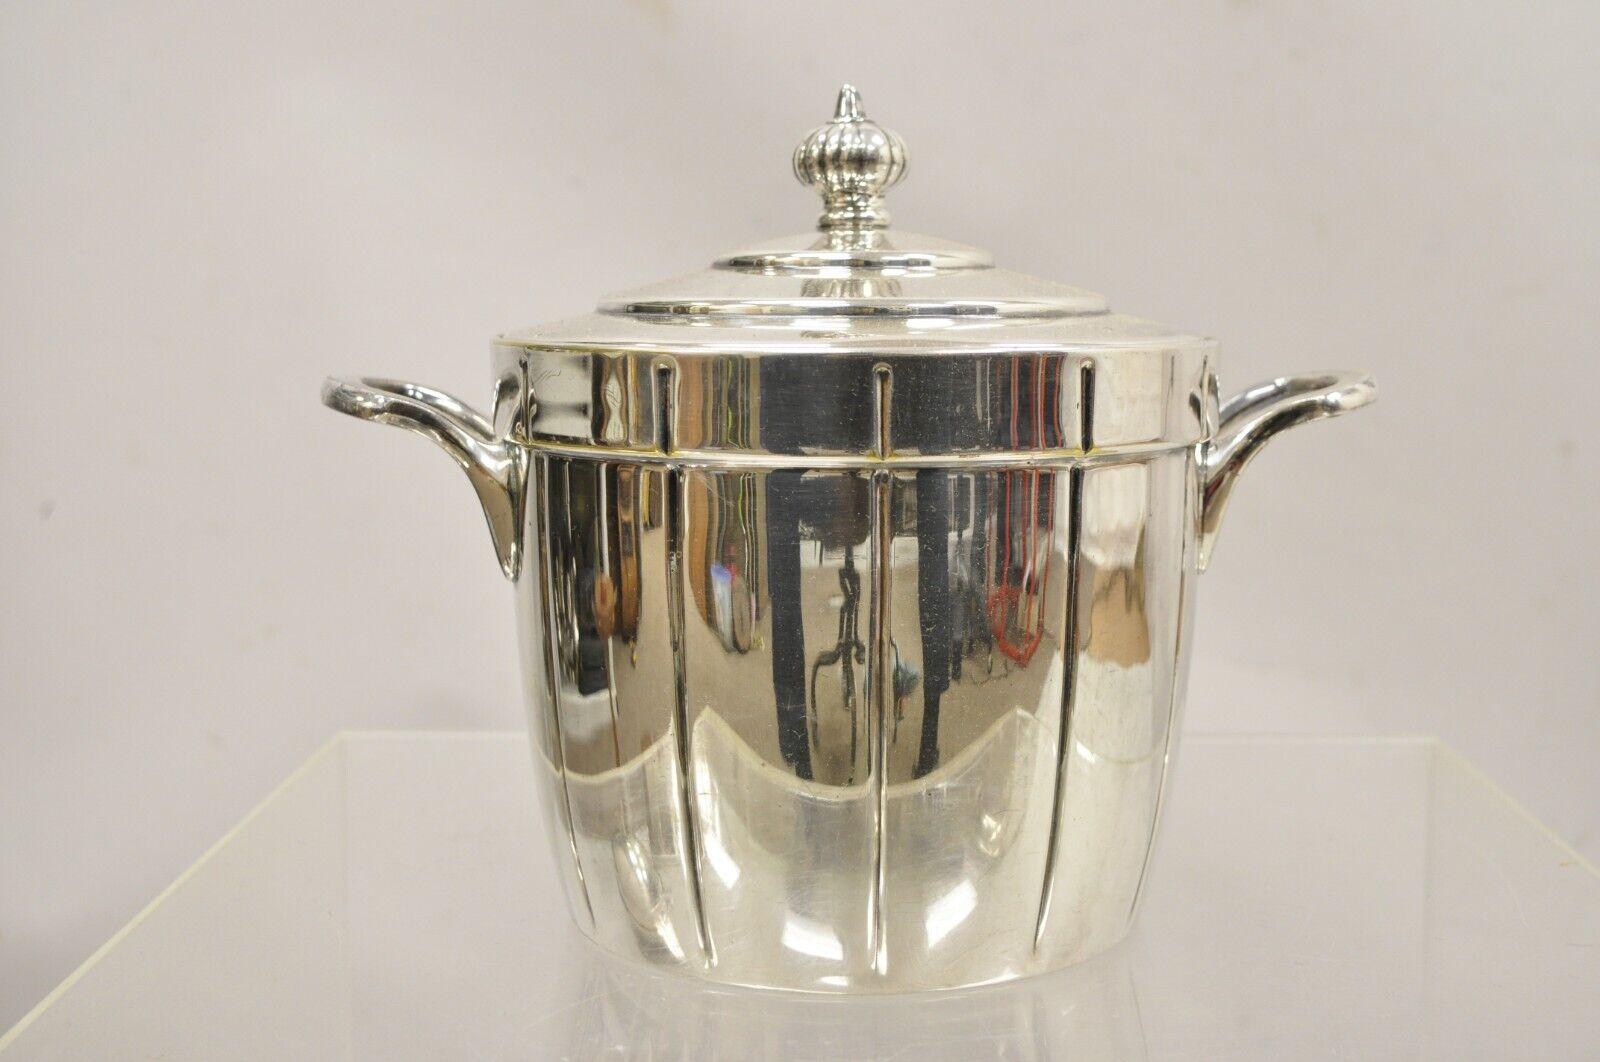 Seau à glace à couvercle en métal argenté avec intérieur en verre, Vintage By Bowmans & Co. Circa Mid 20th Century. Mesures :  8,5